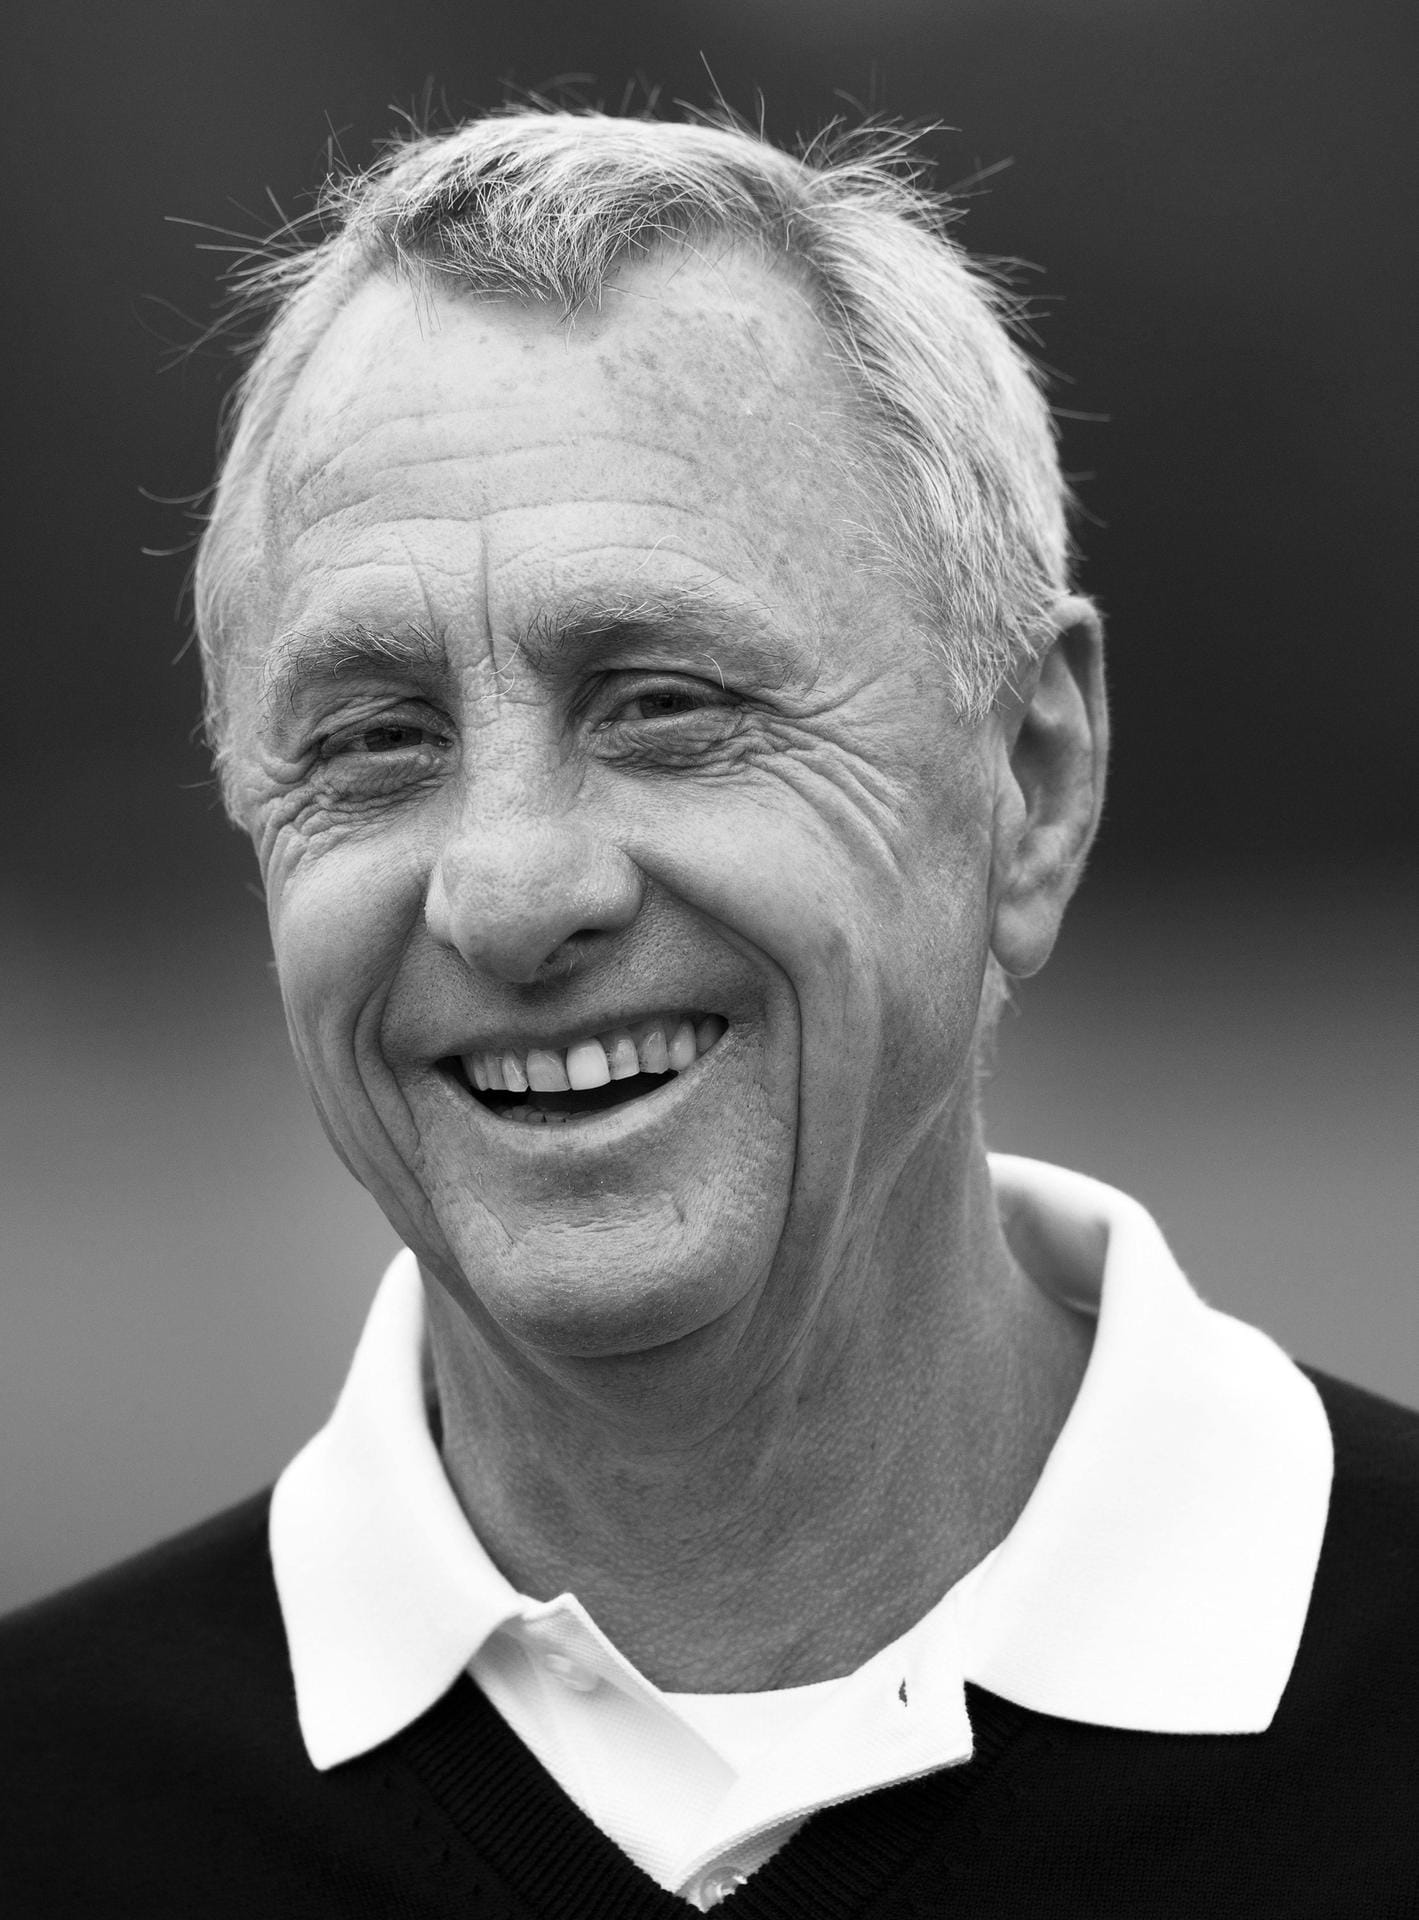 Er war ein niederländisches Fußball-Idol: Johan Cruyff, Vizeweltmeister von 1974, starb am 24. März 2016 im Alter von 68 Jahren an den Folgen eines Krebsleidens.